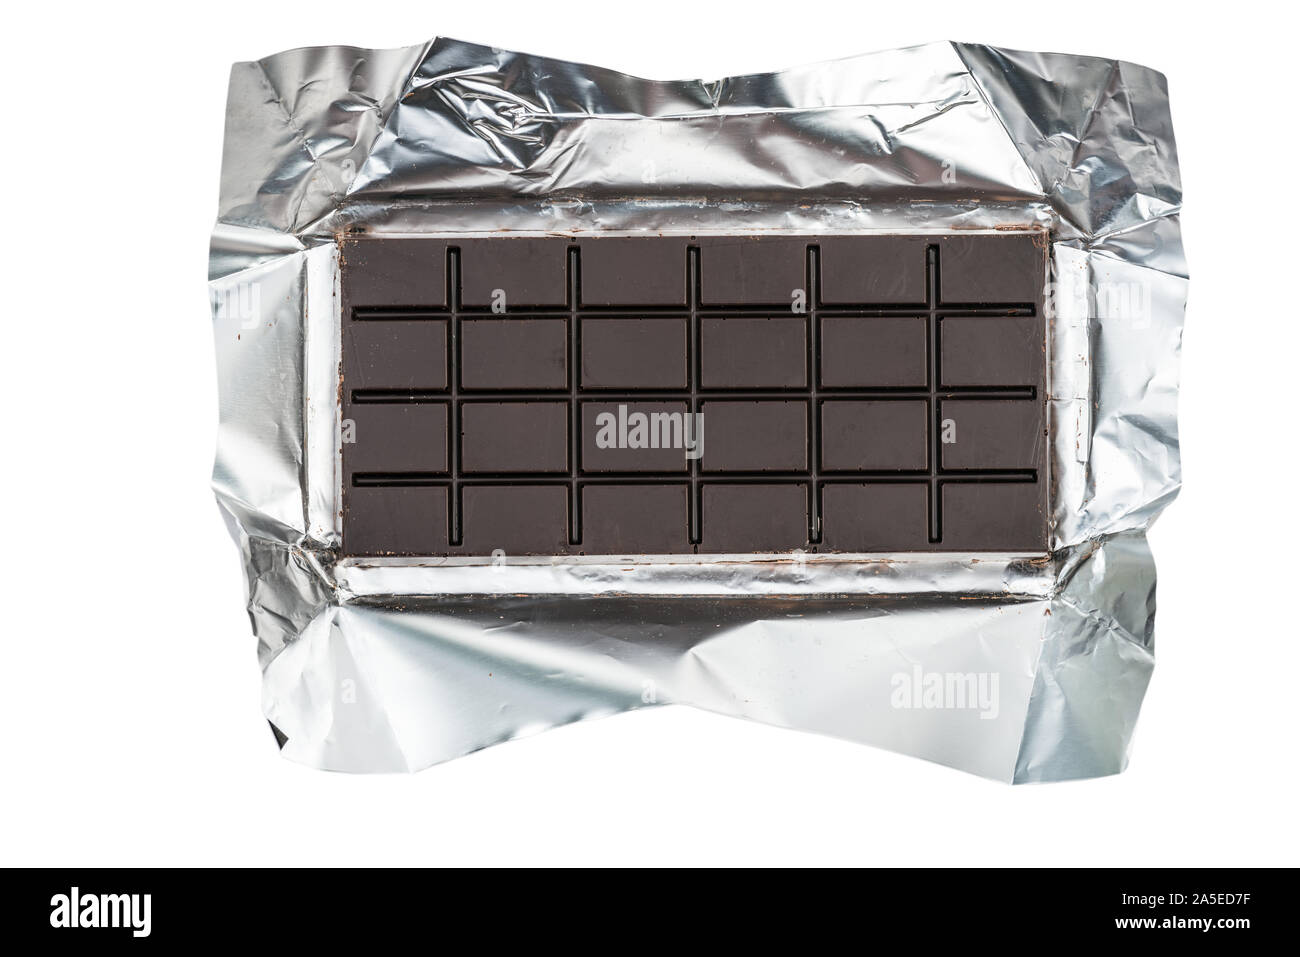 Vue supérieure de la barre de chocolat au fleuret isolated on white with clipping path Banque D'Images